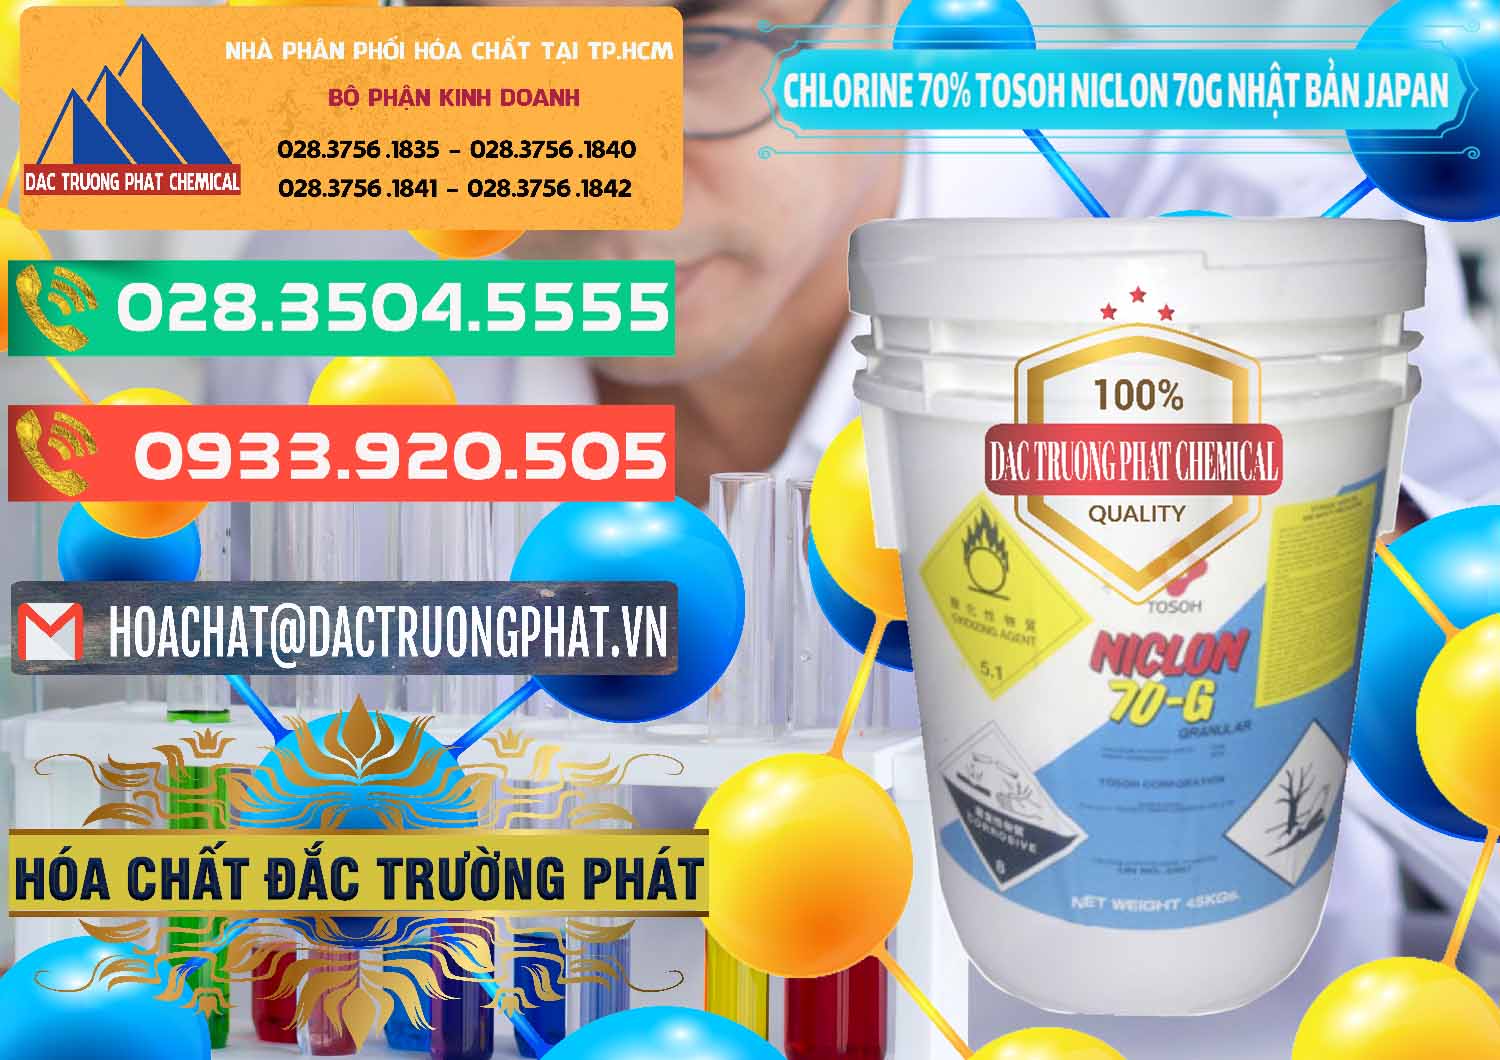 Đơn vị chuyên bán _ cung cấp Clorin – Chlorine 70% Tosoh Niclon 70G Nhật Bản Japan - 0242 - Bán ( phân phối ) hóa chất tại TP.HCM - congtyhoachat.com.vn